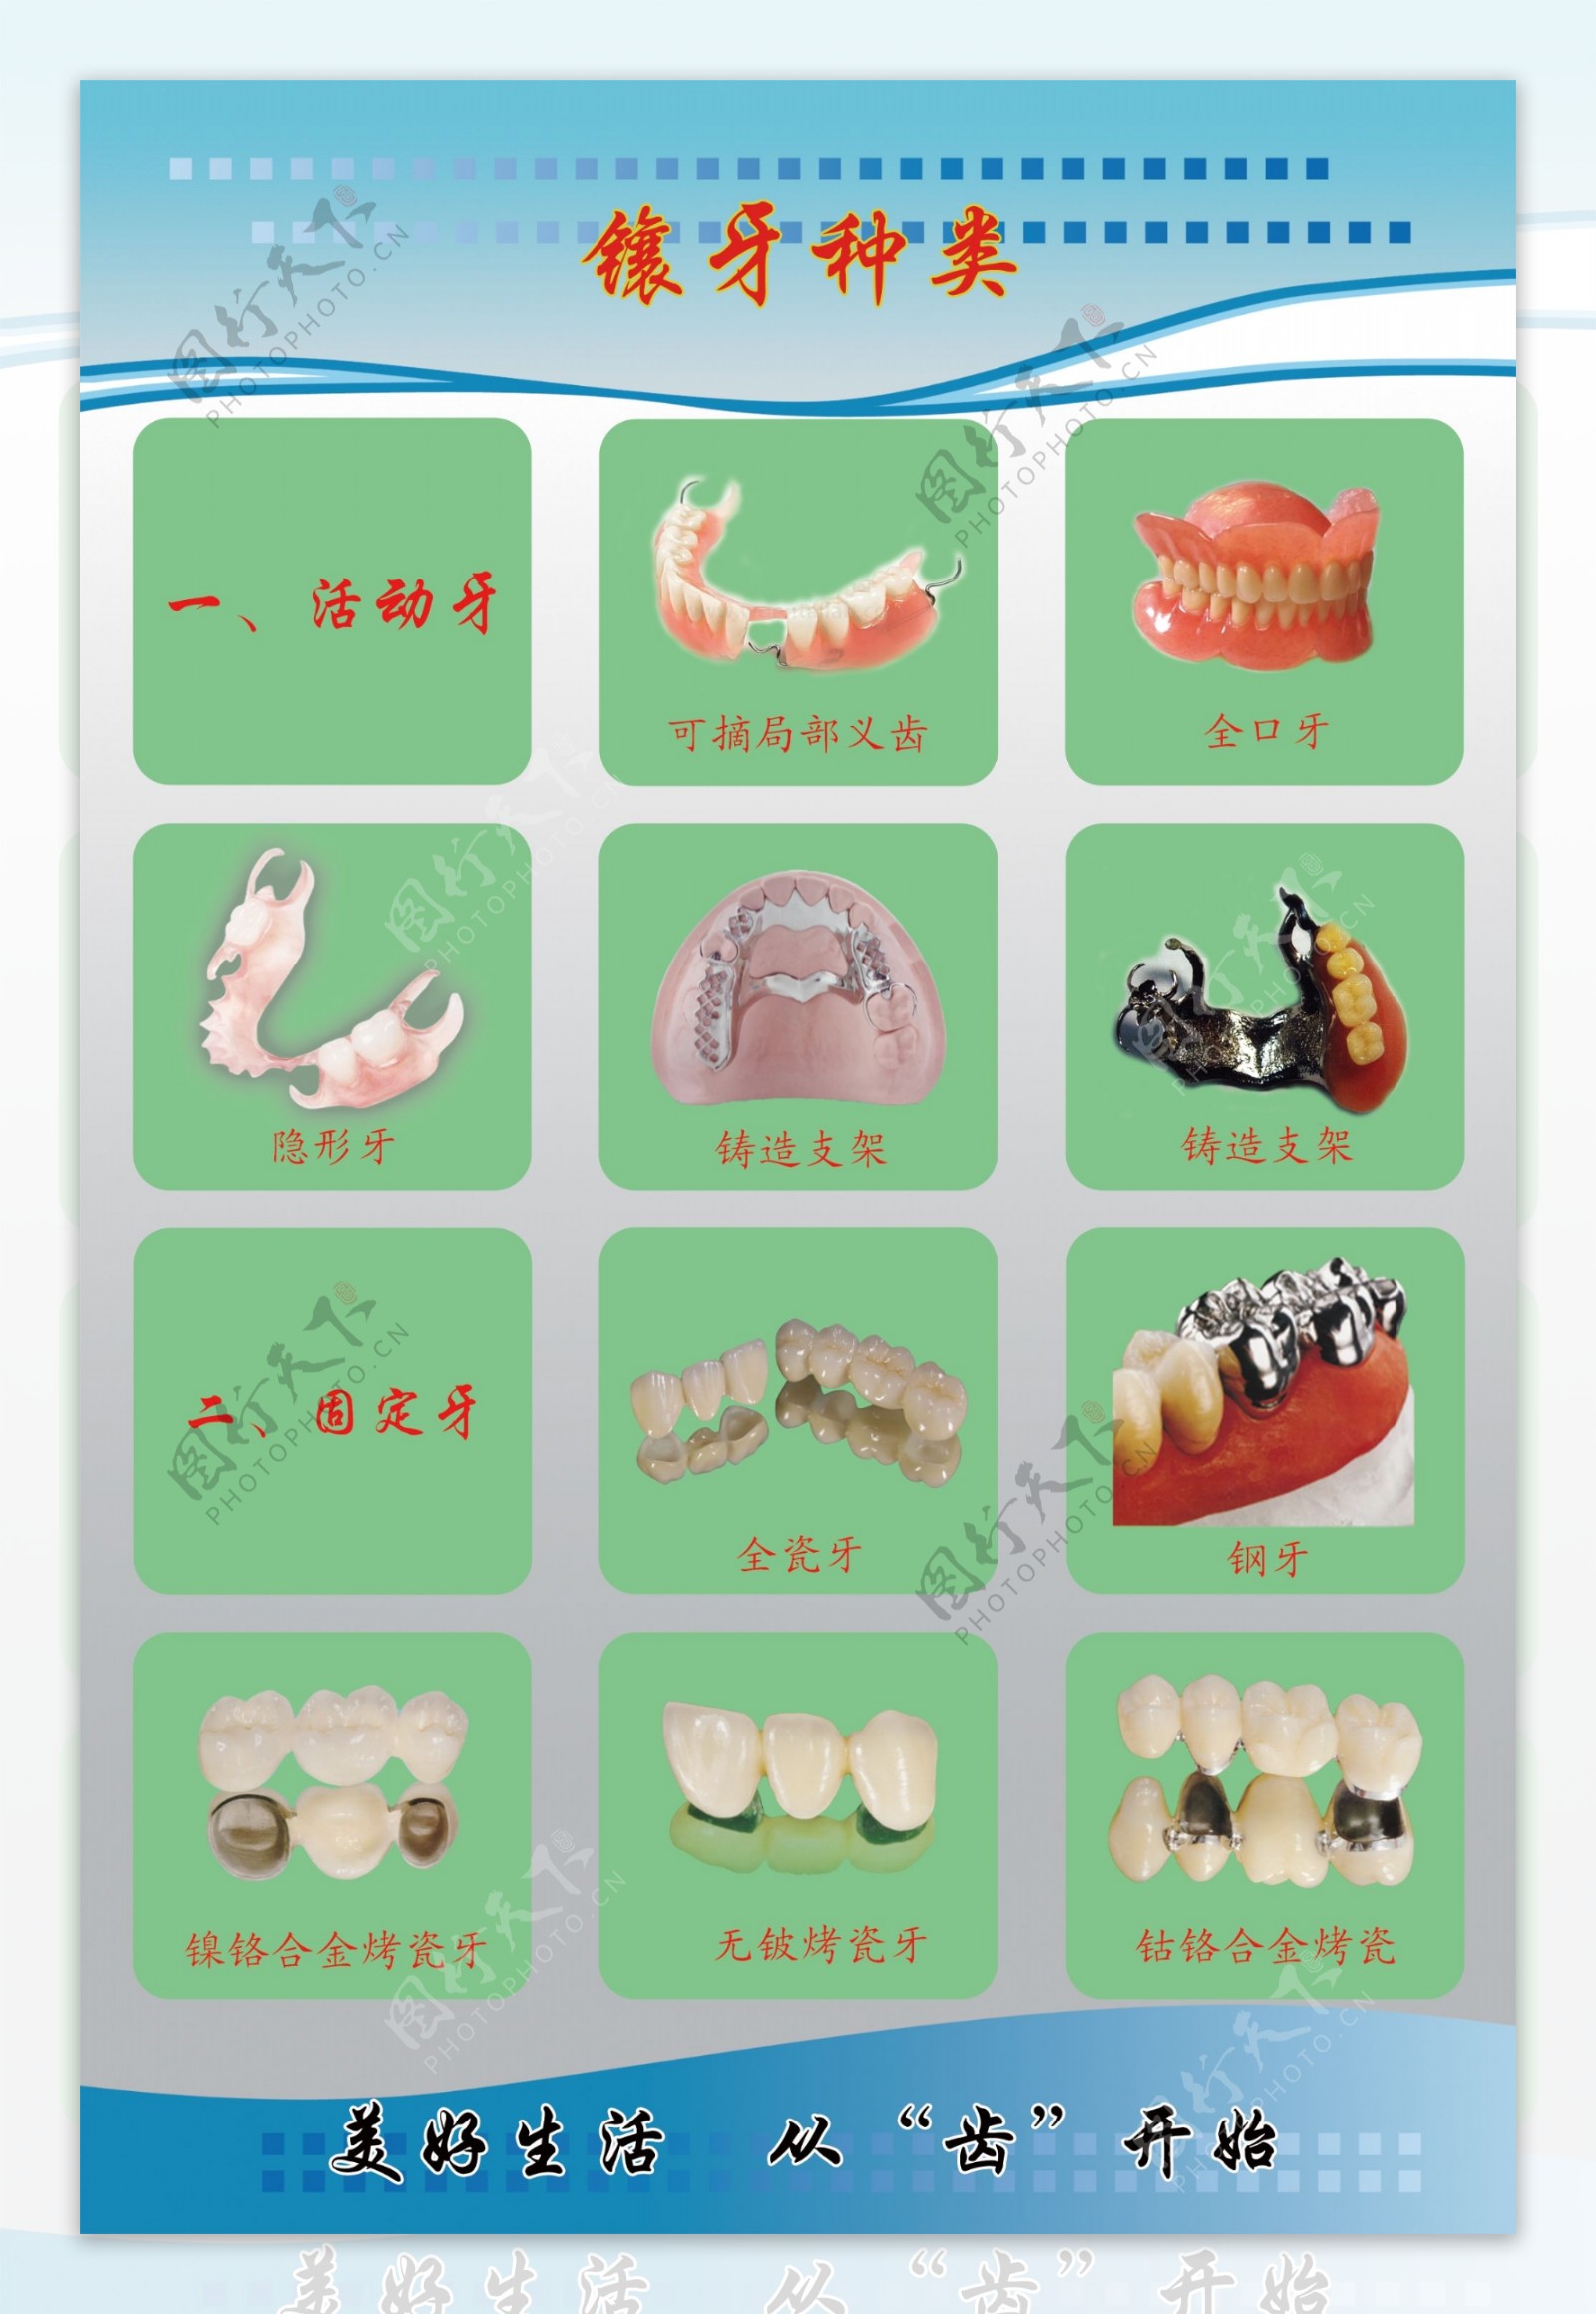 全瓷牙镶牙过程-爱康健齿科